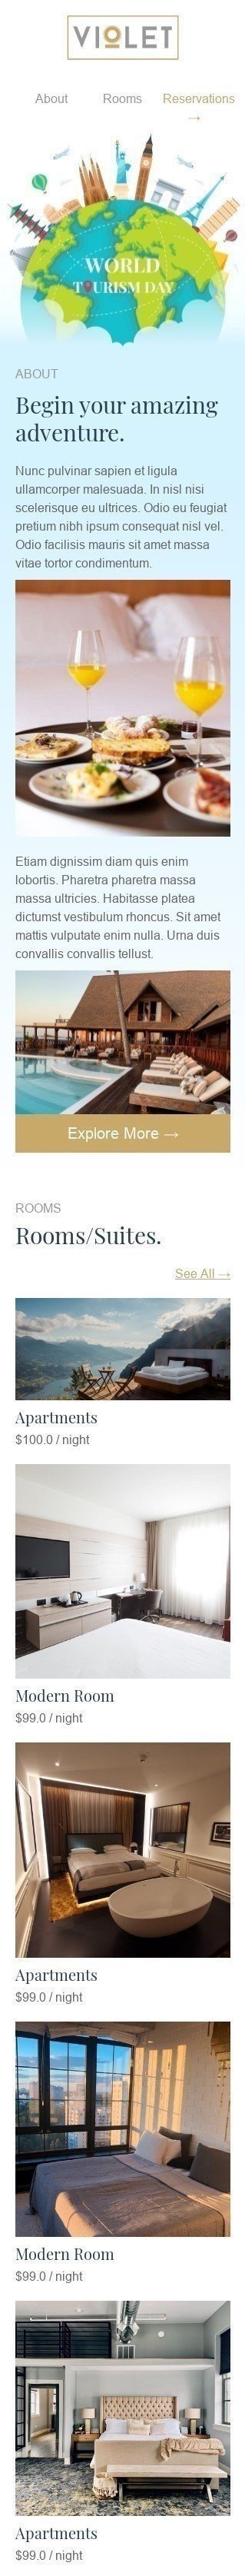 Welttourismustag E-Mail-Vorlage «Beginnen Sie Ihr erstaunliches Abenteuer» für Hotels-Branche Ansicht auf Mobilgeräten